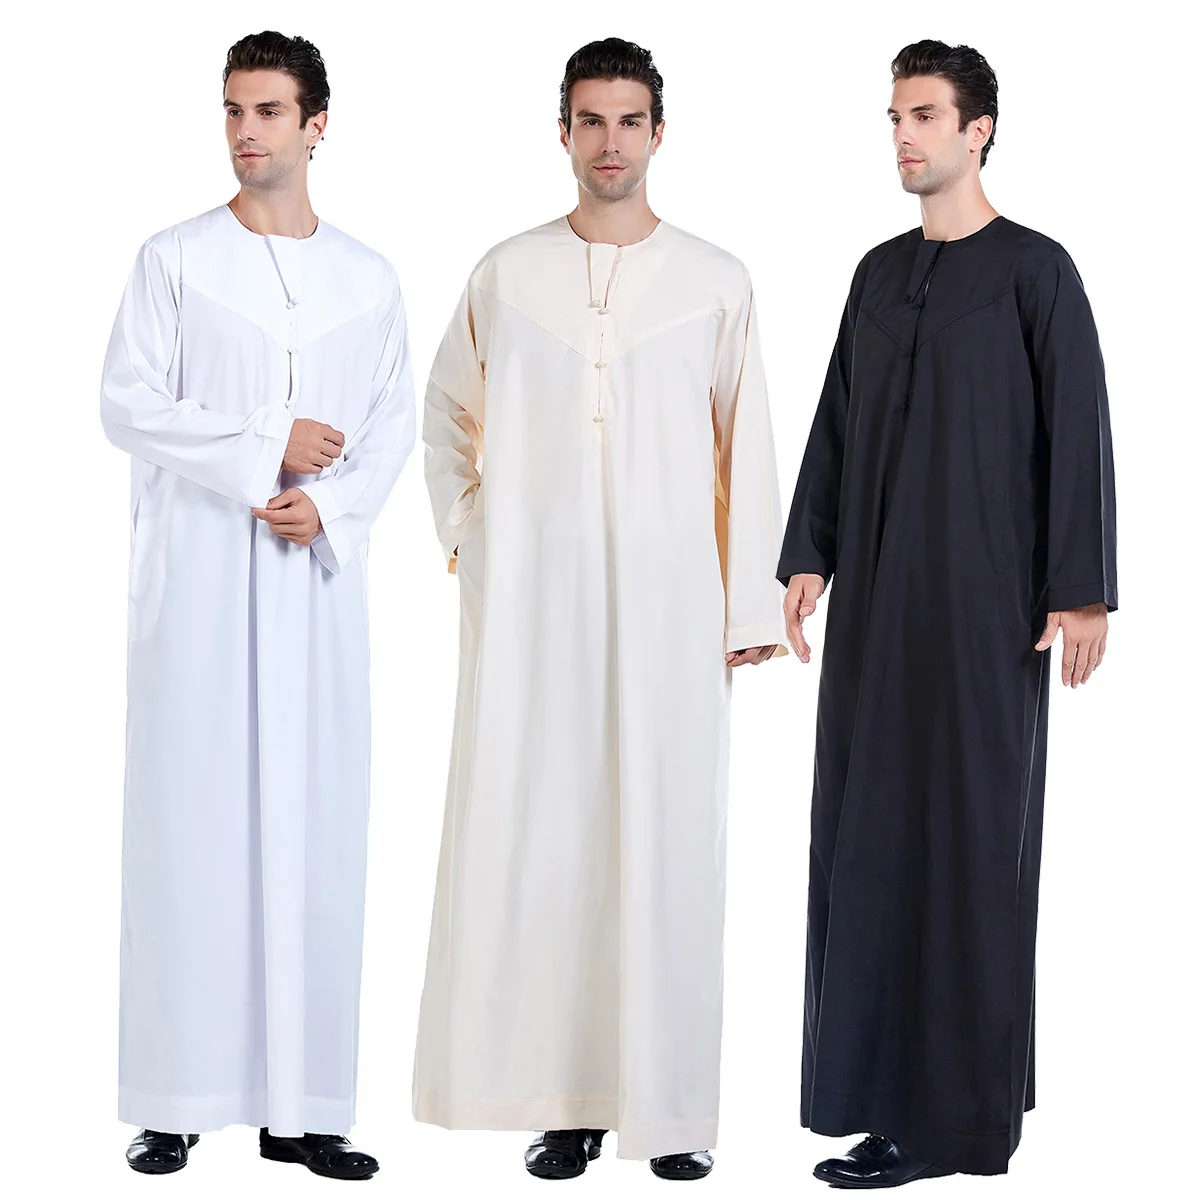 Мусульманская мода мужская одежда Abaya Thobe для мужчин Мужская шляпа мужская мусульманская одежда исламика Мужская стандартная Пакистанская мусульманская одежда